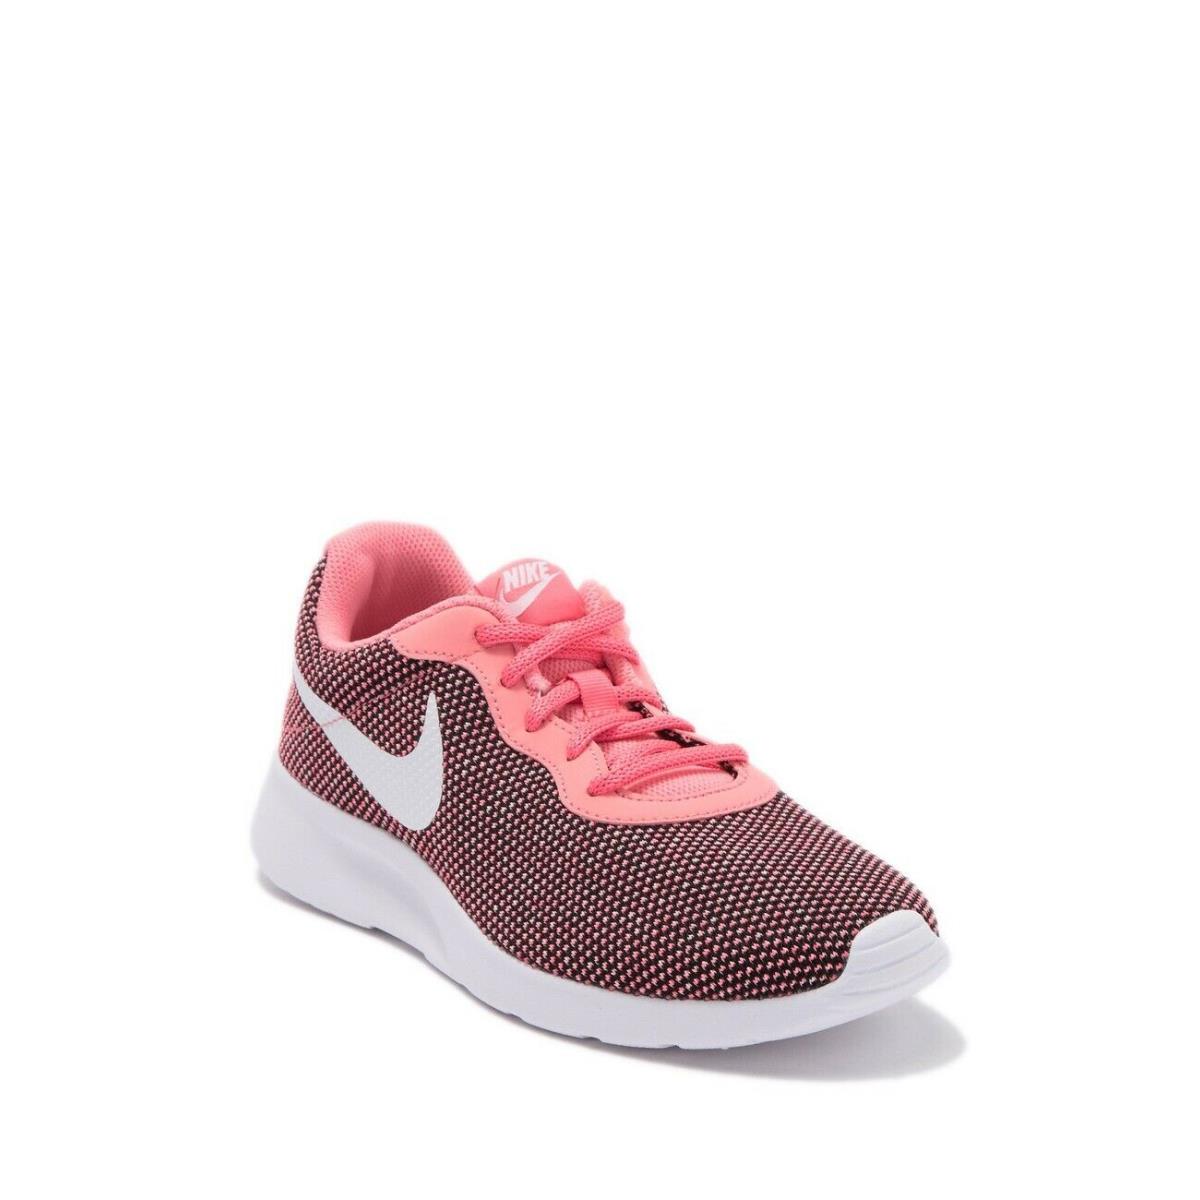 Nike Tanjun Women Running Walking Shoes Pink BV7432 002 Size 7.5